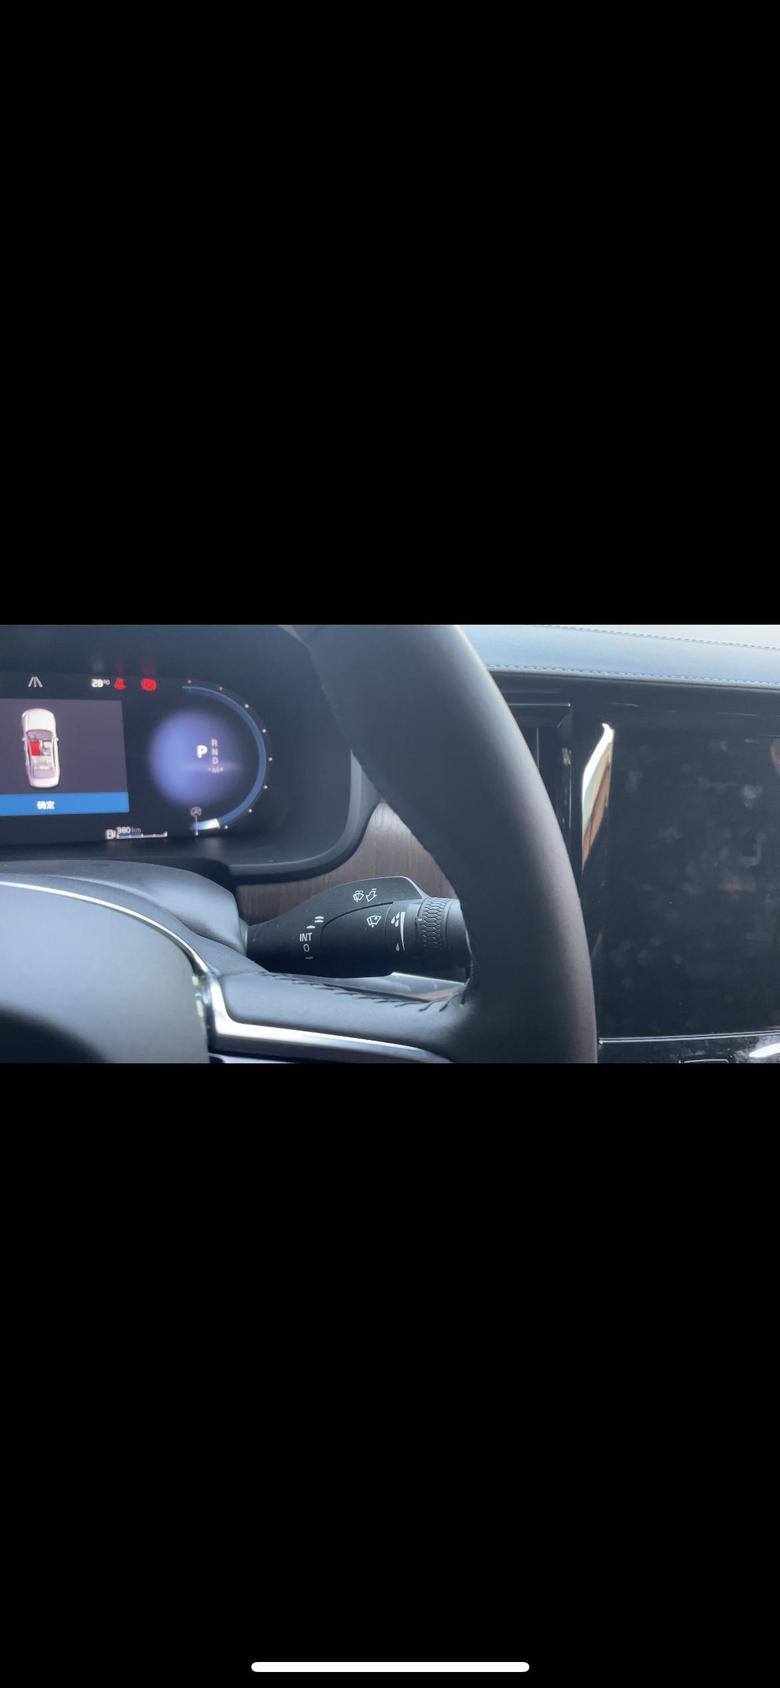 10月8日提的2022款沃尔沃s90今天死机黑屏了，自动刹车失灵倒车雷达用不了、所有屏幕里有的功能通通用不了，真是揪心，才走八百多公里